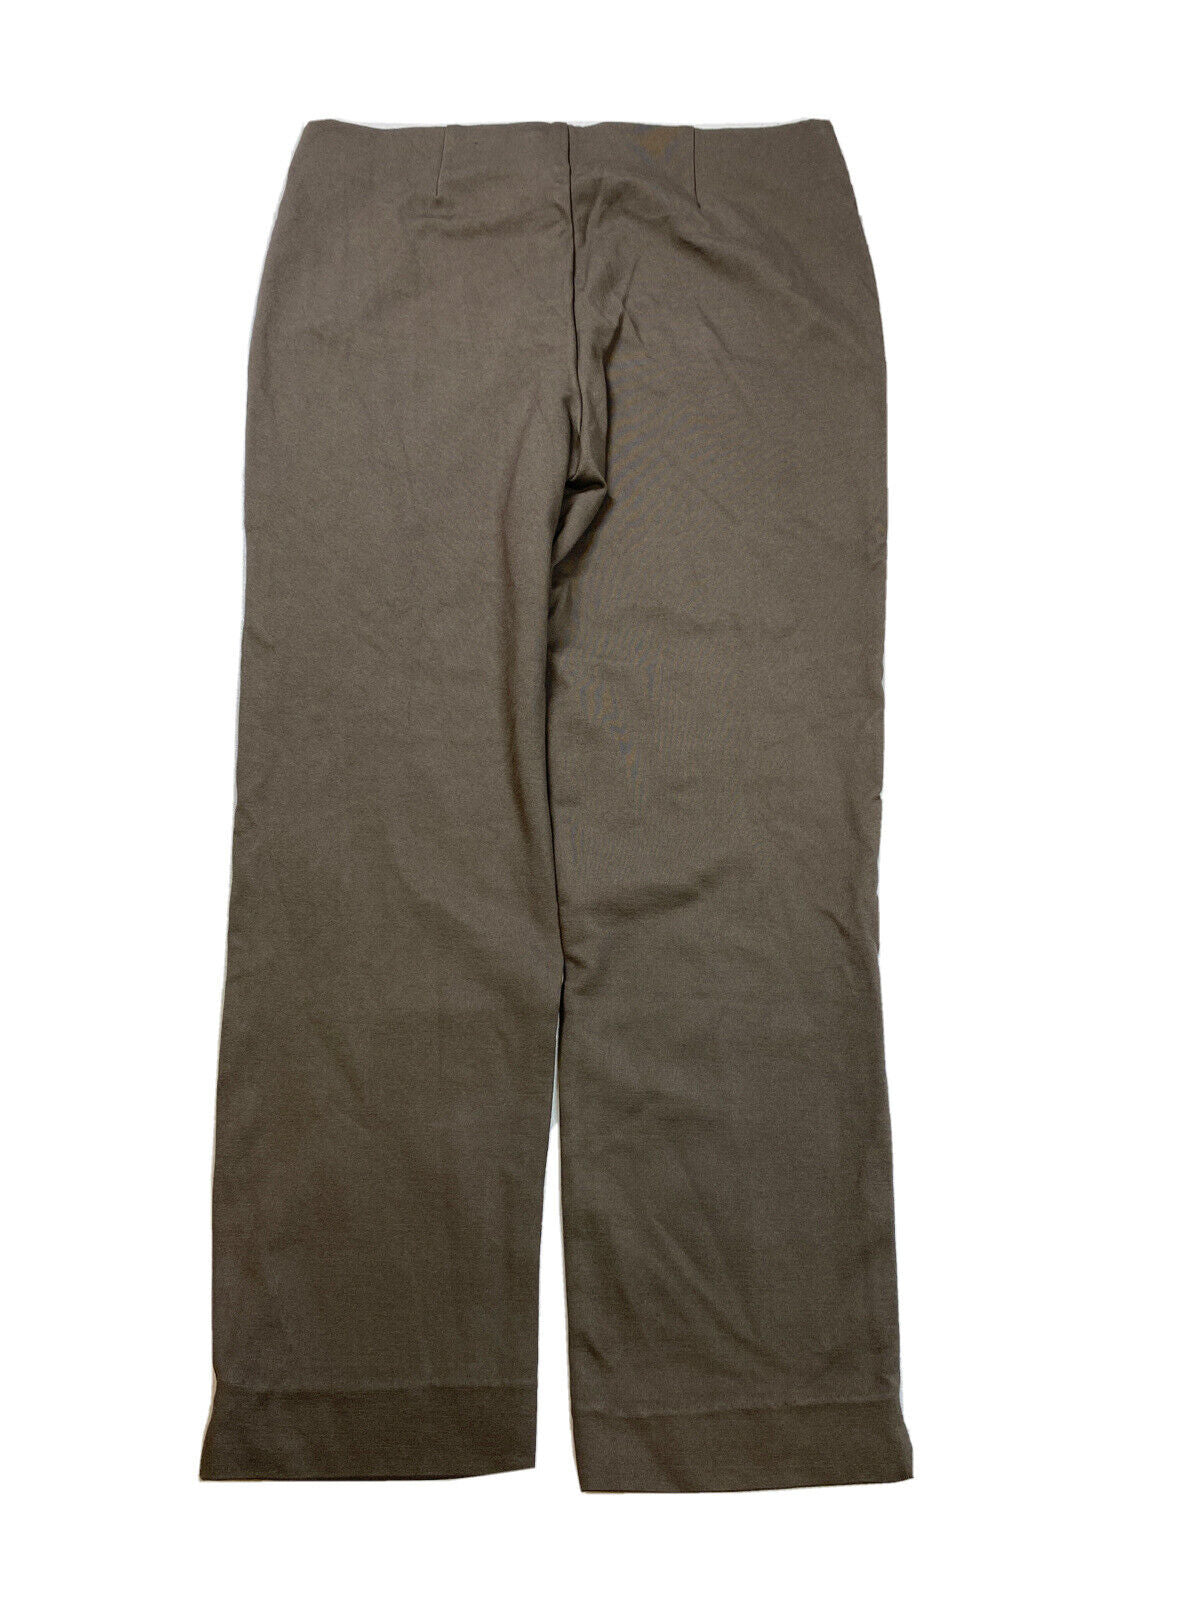 Chico's Pantalones tobilleros ajustados Ponte color marrón para mujer - 1/US 8